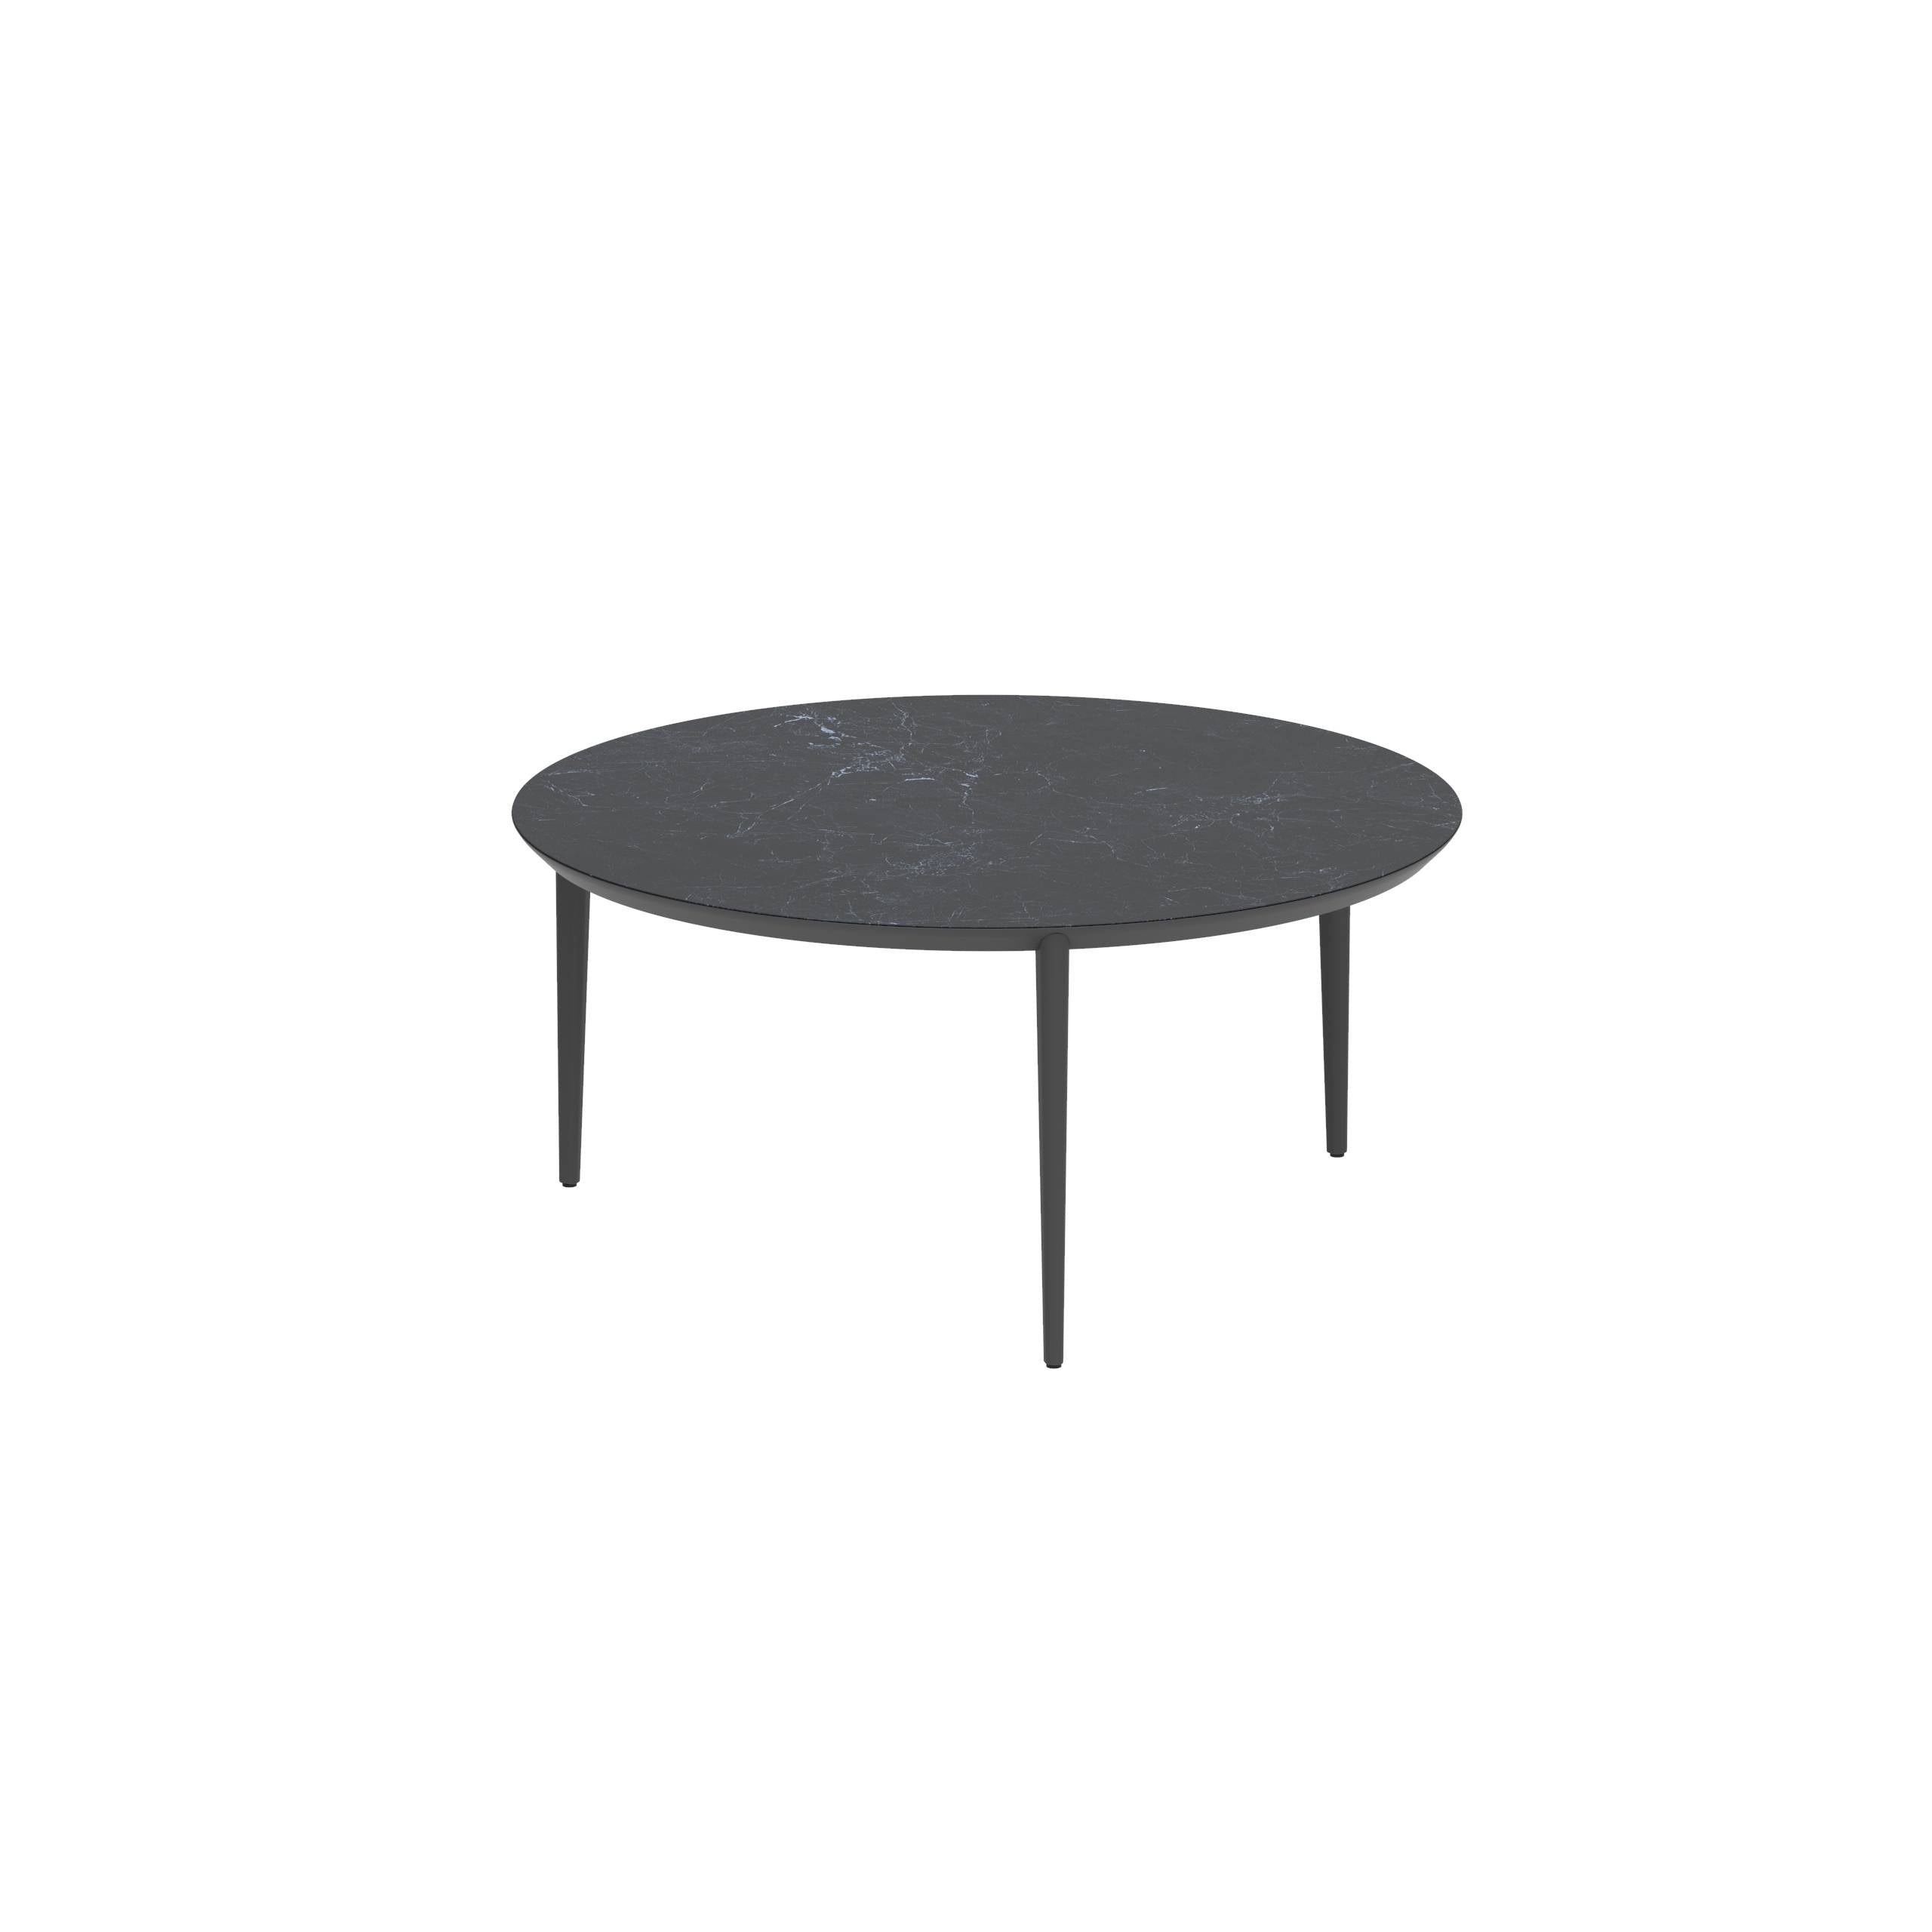 U-Nite Table Round Ø 160cm Alu Legs Anthracite - Table Top Ceramic Nero Marquina